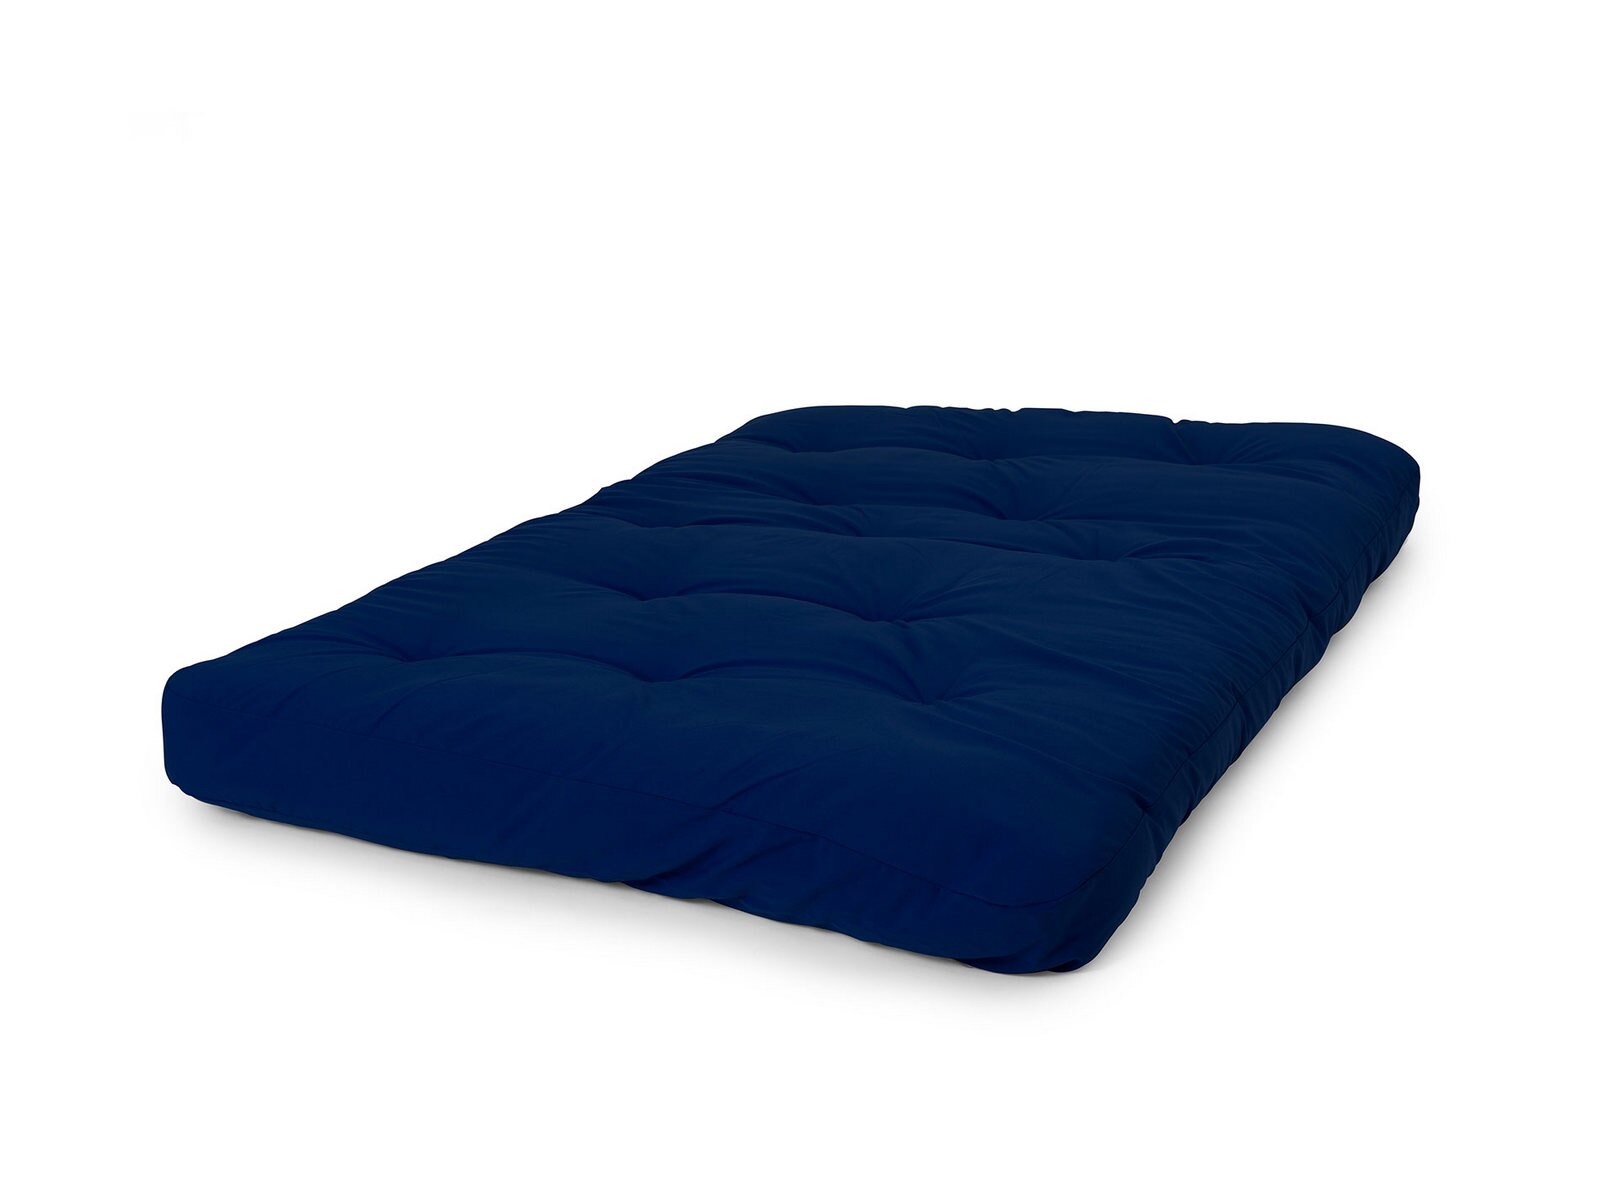 donco liberty 8 futon mattress review